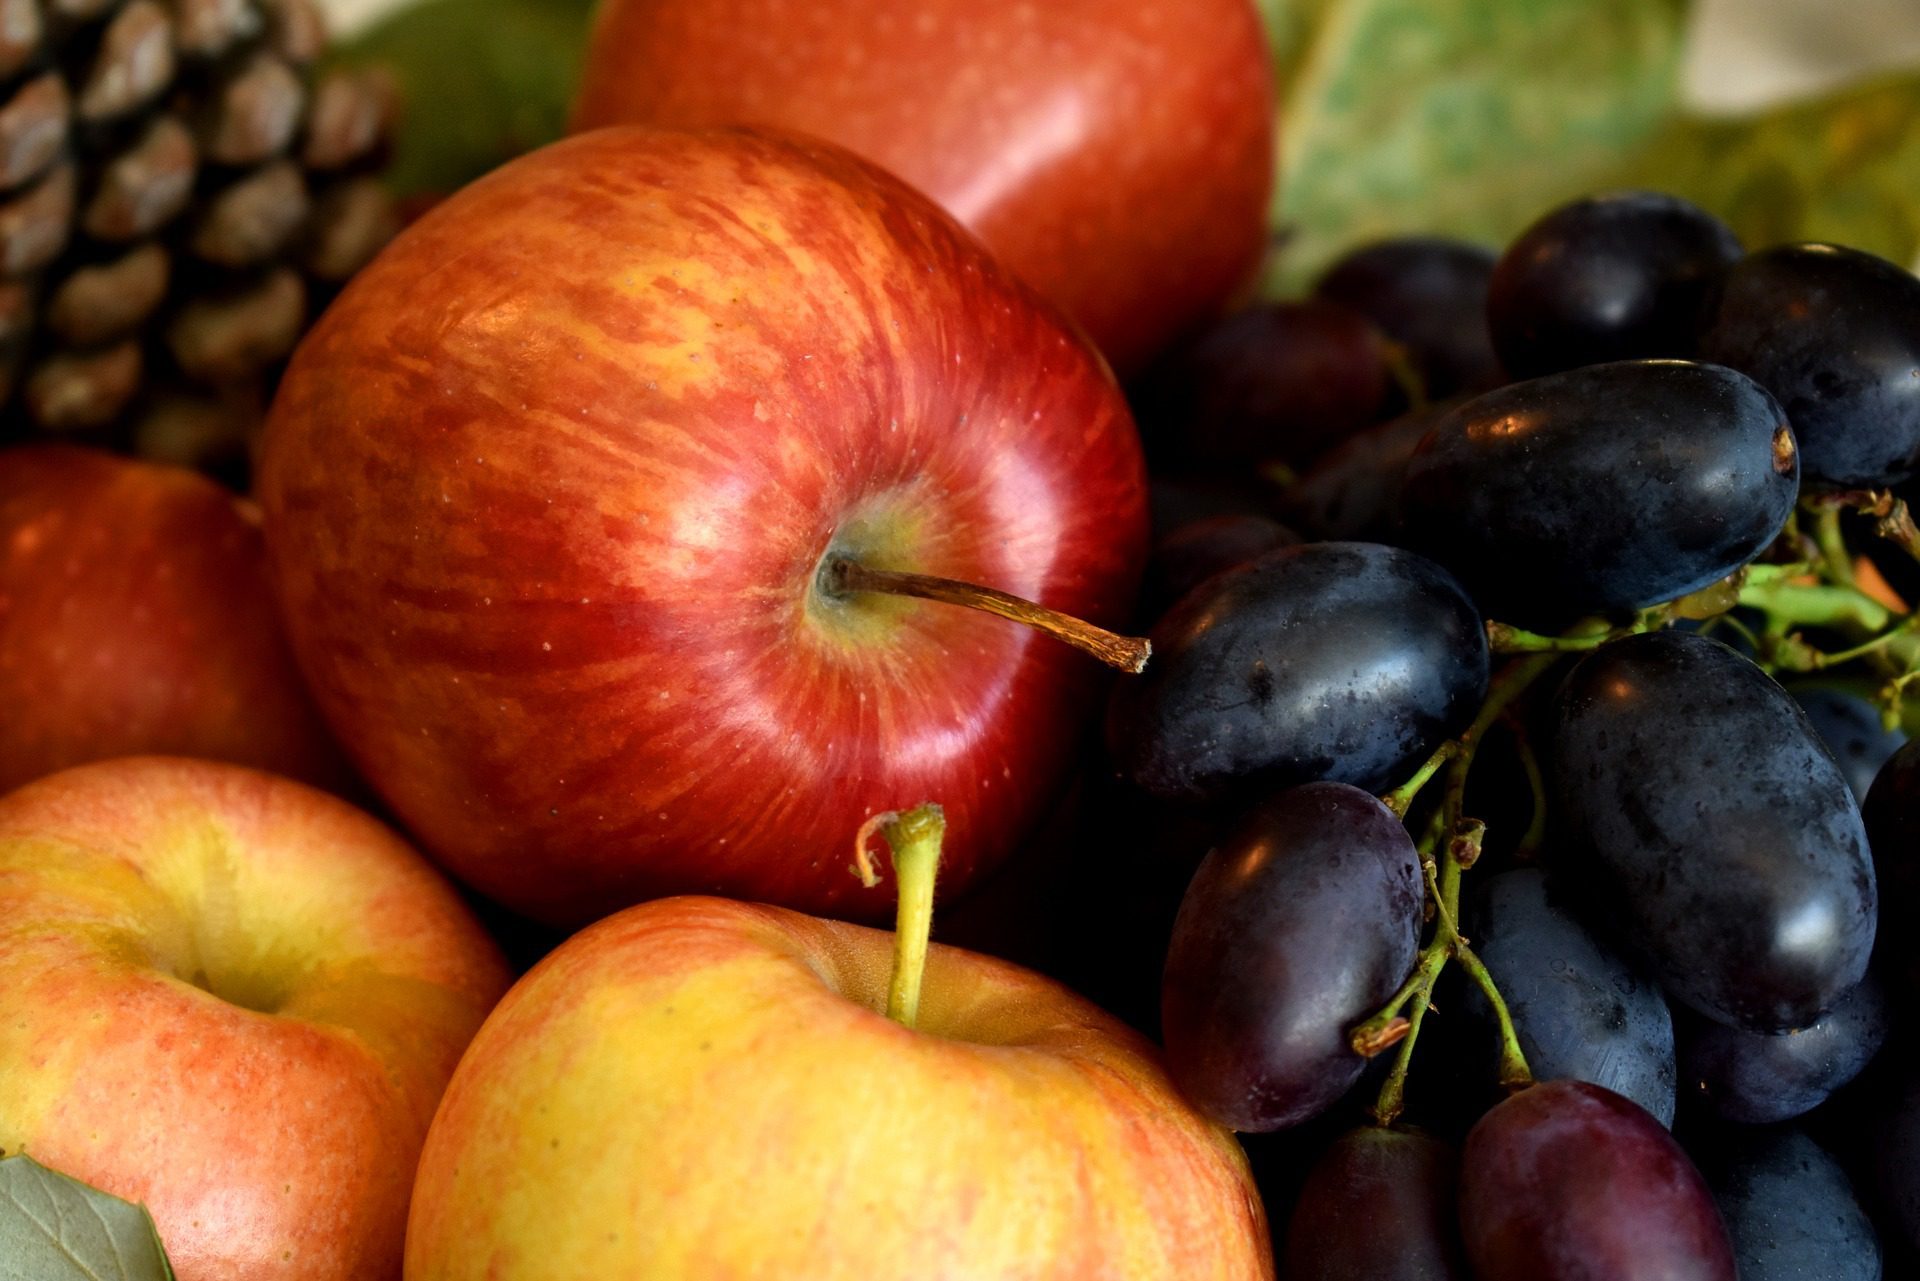 apples 3614859 1920 - Antioxidanty v ovoci a zelenině 1/1